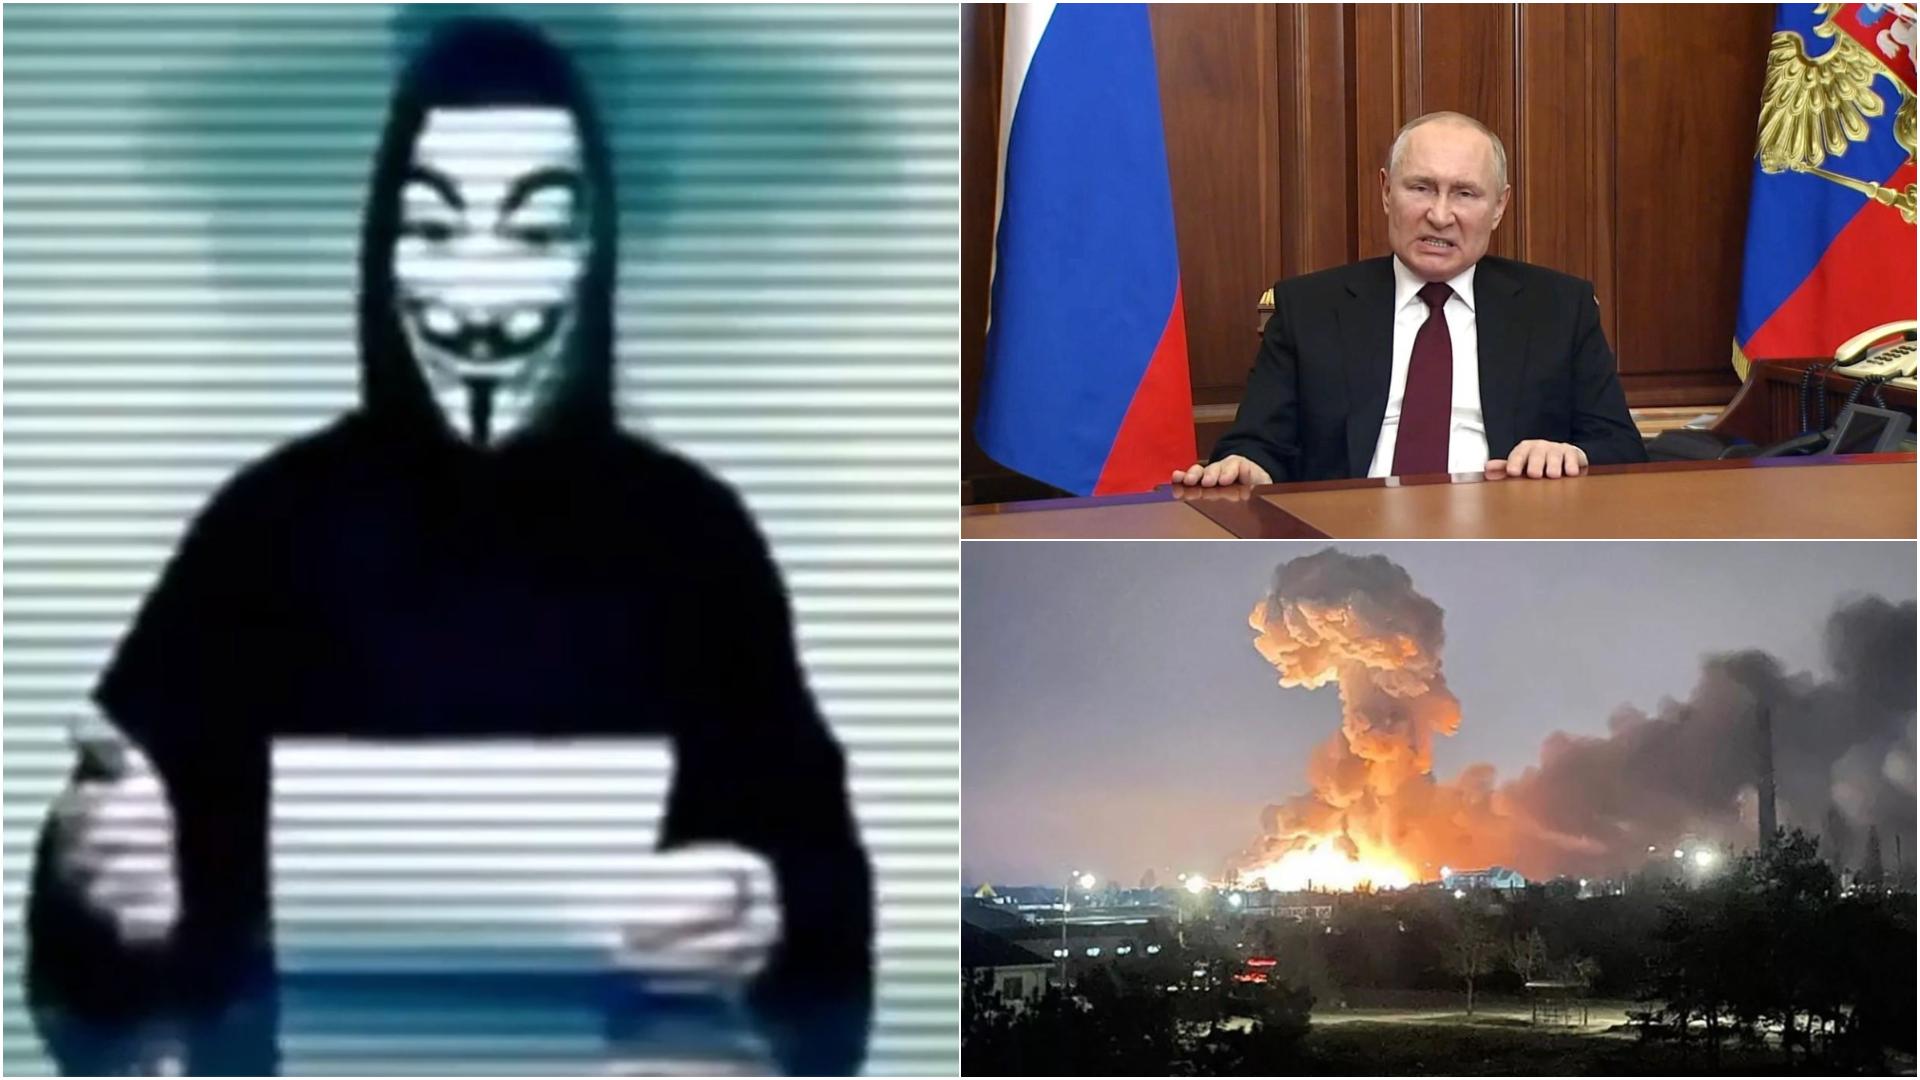 Grupul de hackeri Anonymous a declarat „război cibernetic” Rusiei. Ce s-a întâmplat cu canalul de televiziune rusesc RT